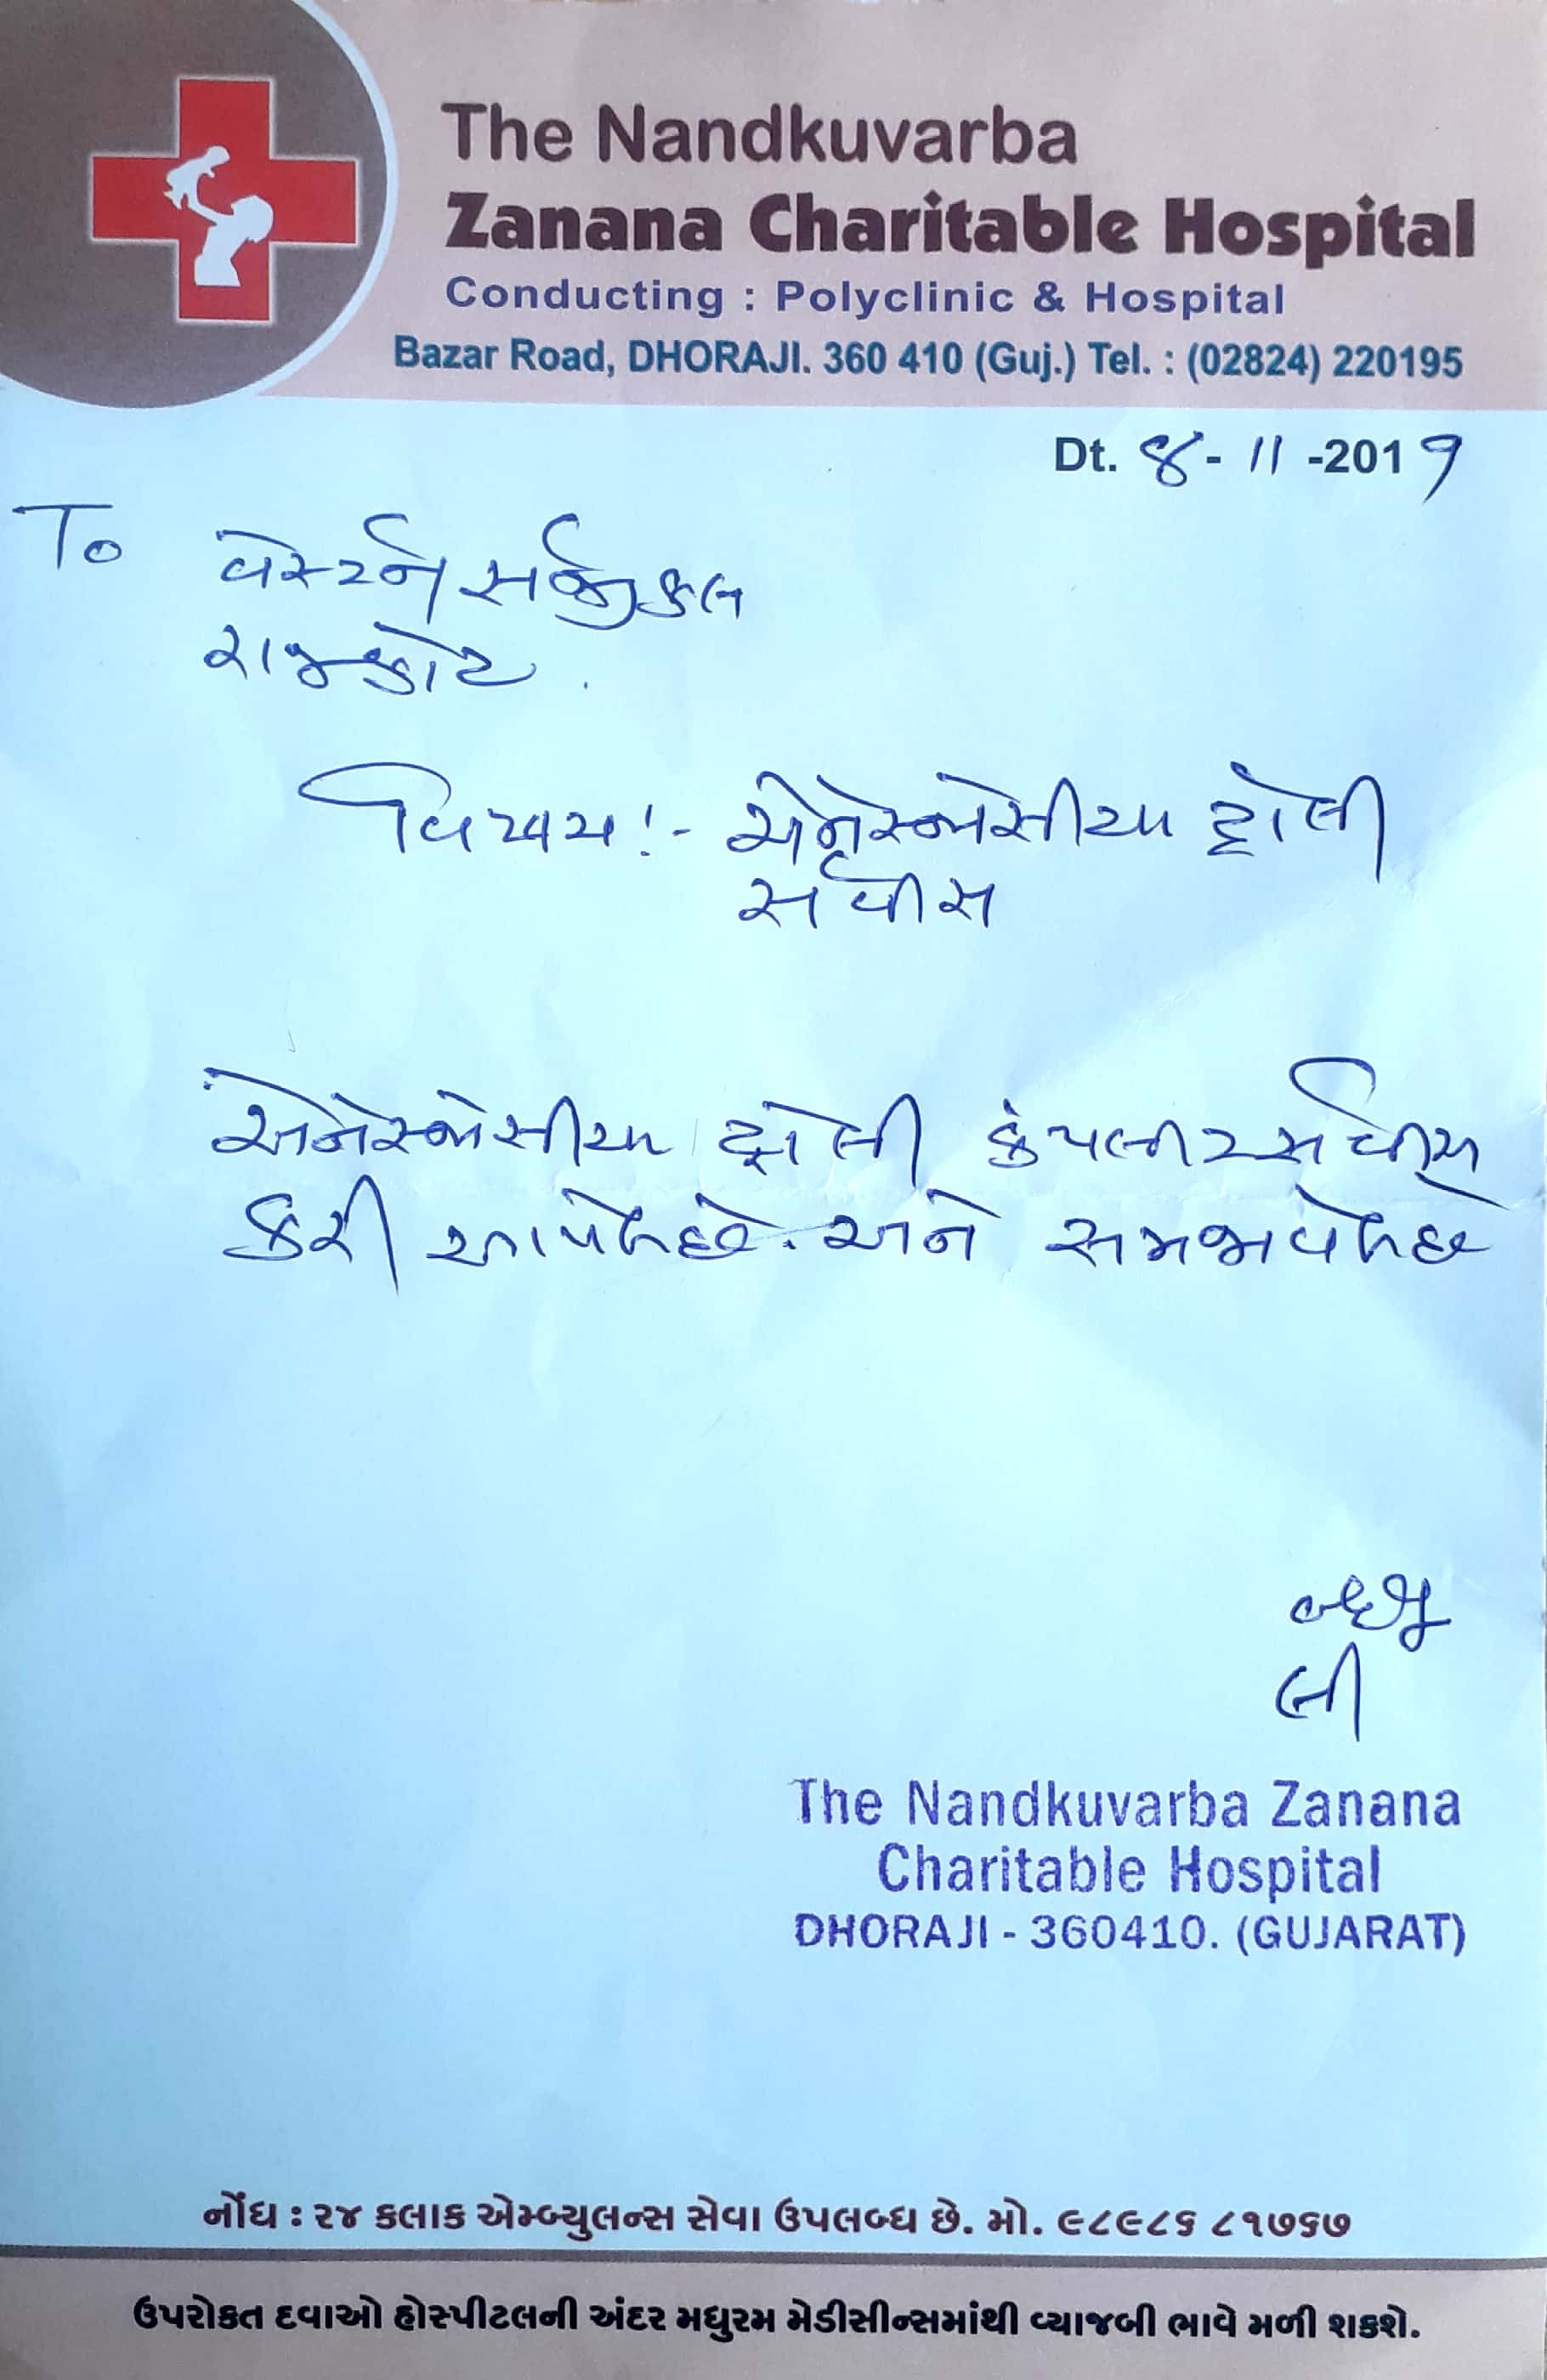 The Nandkuvarba Zanana Charitable Hospital - Dhoraji 